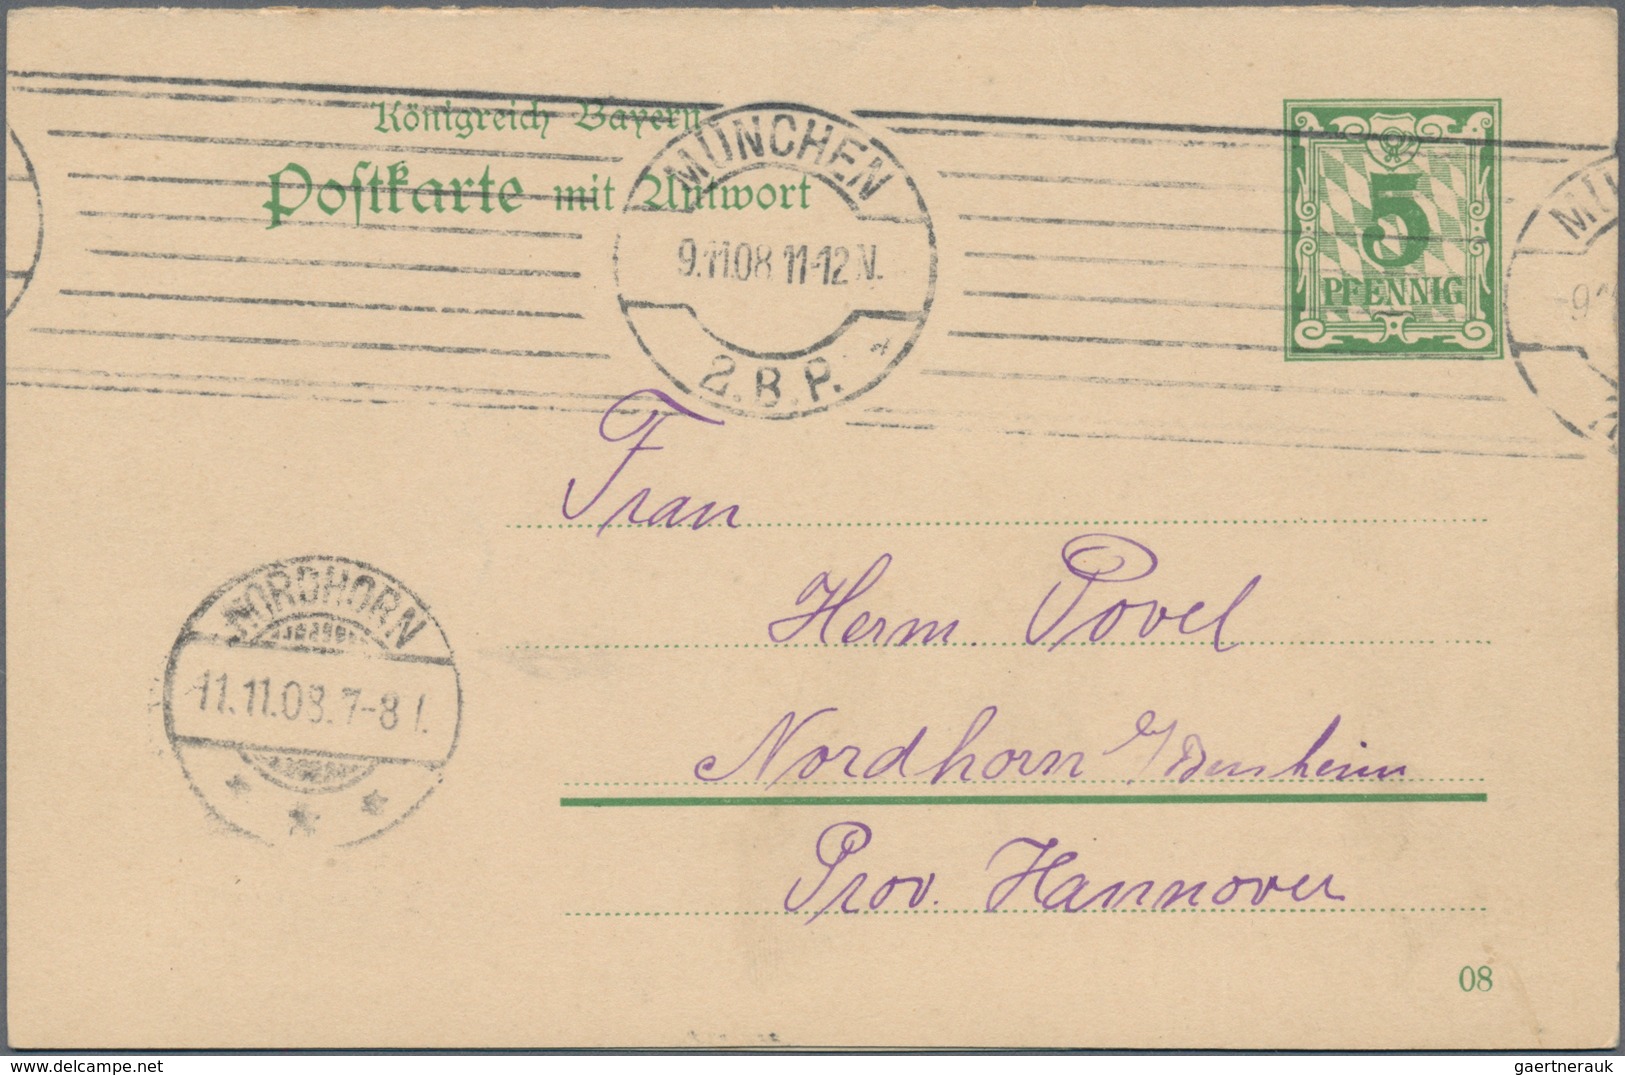 Bayern - Ganzsachen: 1874/1919, vielseitige Partie von ca. 235 bedarfsgebrauchten Ganzsachen mit Tex